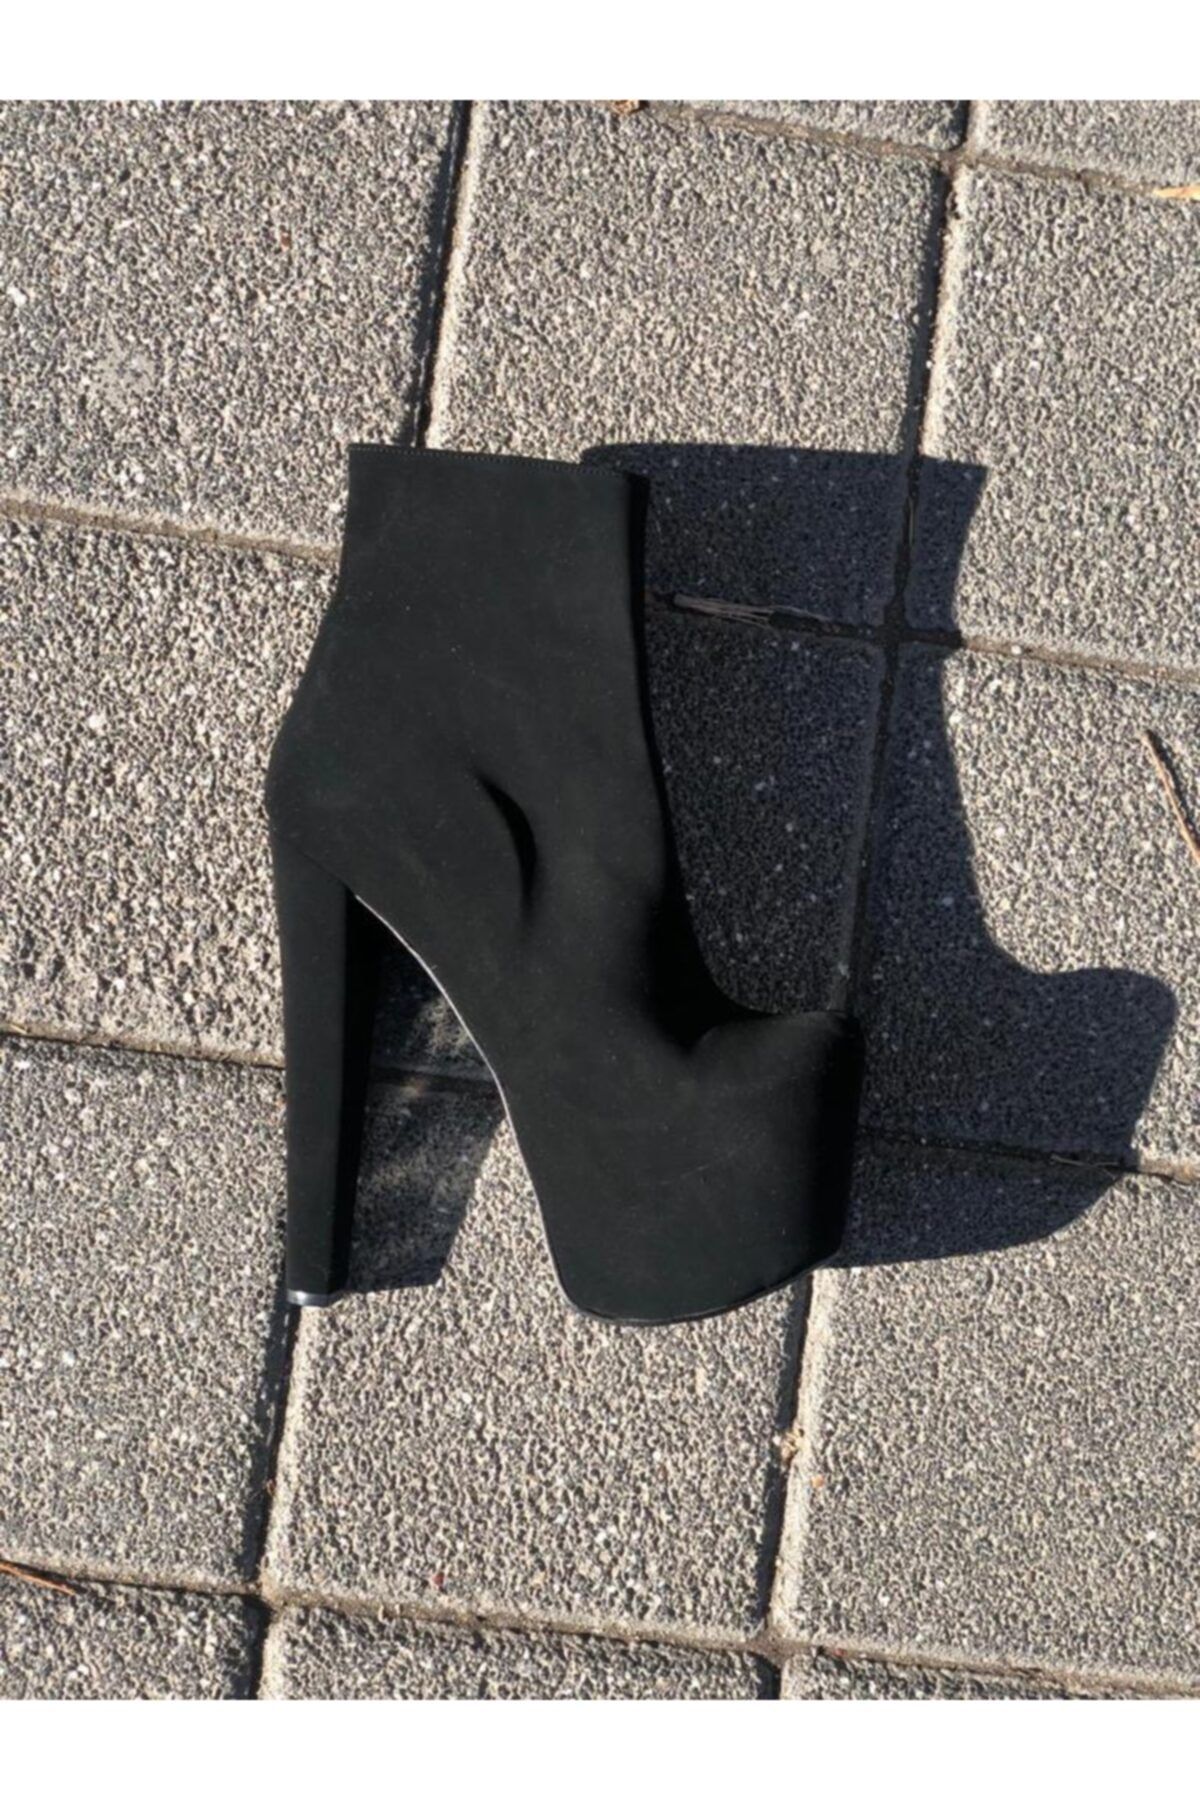 Afilli Kadın Siyah Süet Platform Kalın Yüksek Topuklu 20 cm Bootie Yarım Çizme Şık Yarım Postal Bot